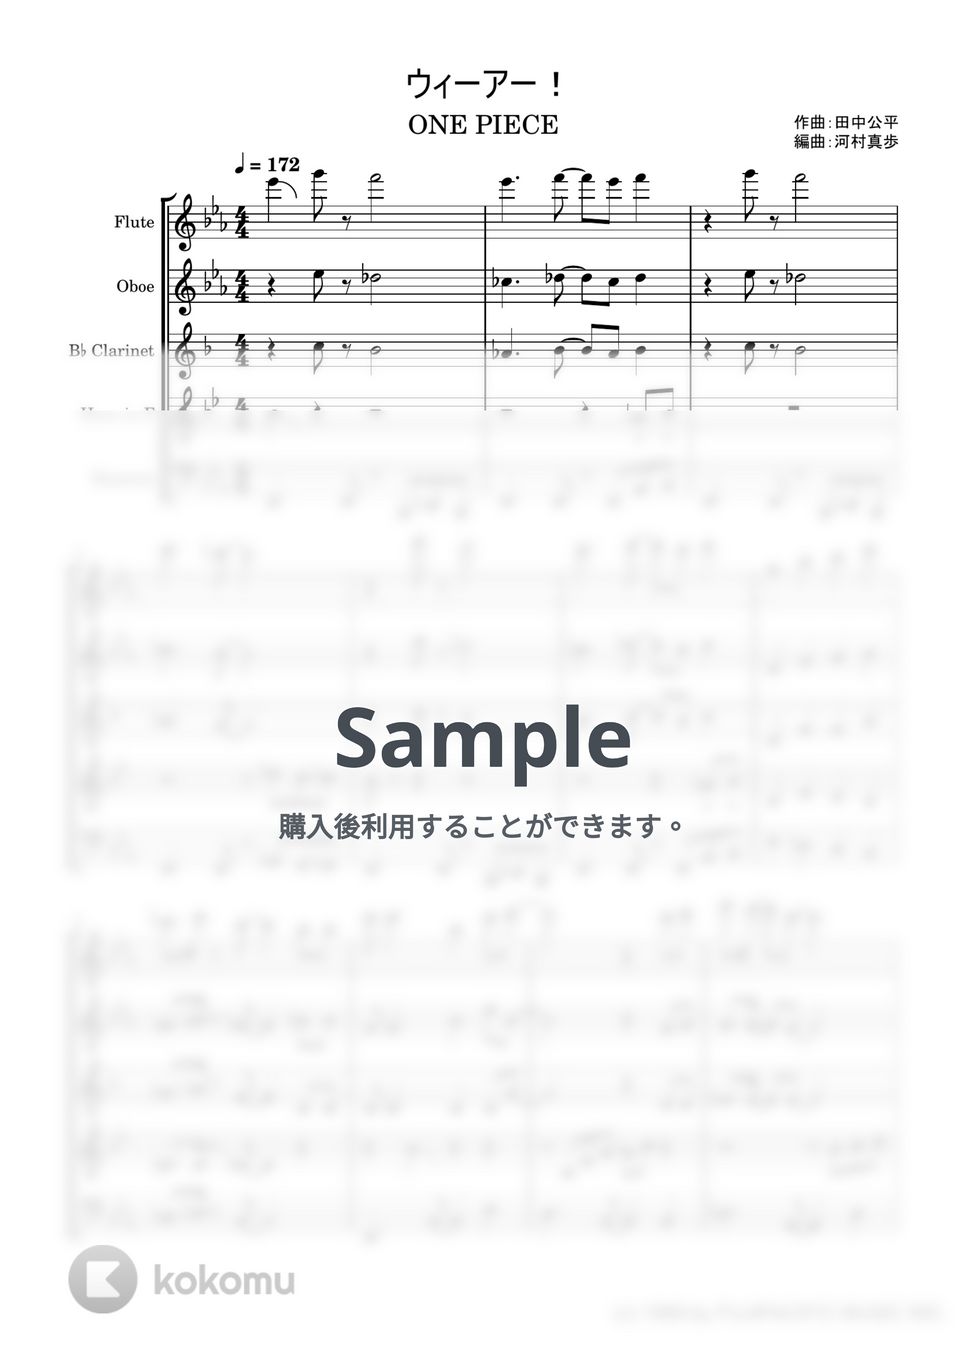 田中公平 - 「ONE+PIECE」より『ウィーアー!』【木管五重奏】 (スコア+パート譜「ONE+PIECE」挿入歌) by いたちの楽譜屋さん